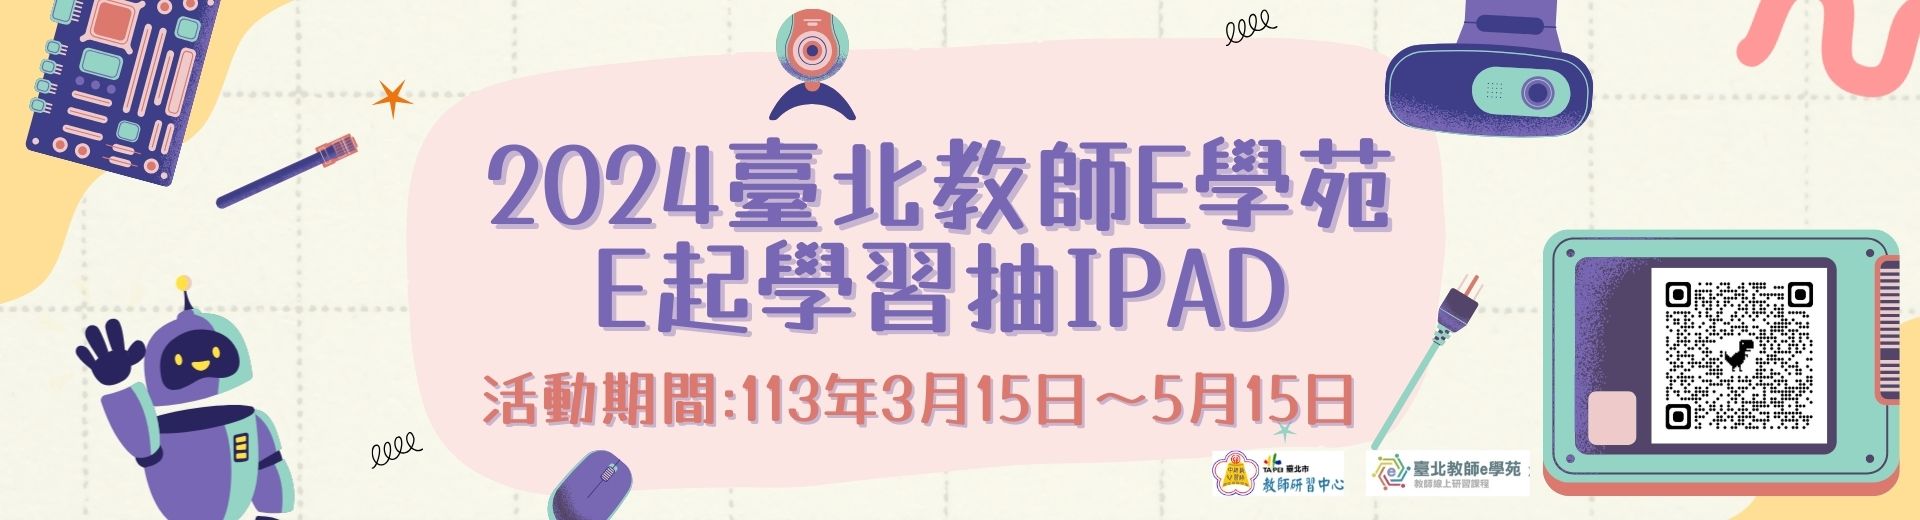 2024臺北教師e學苑－e起學習抽iPad